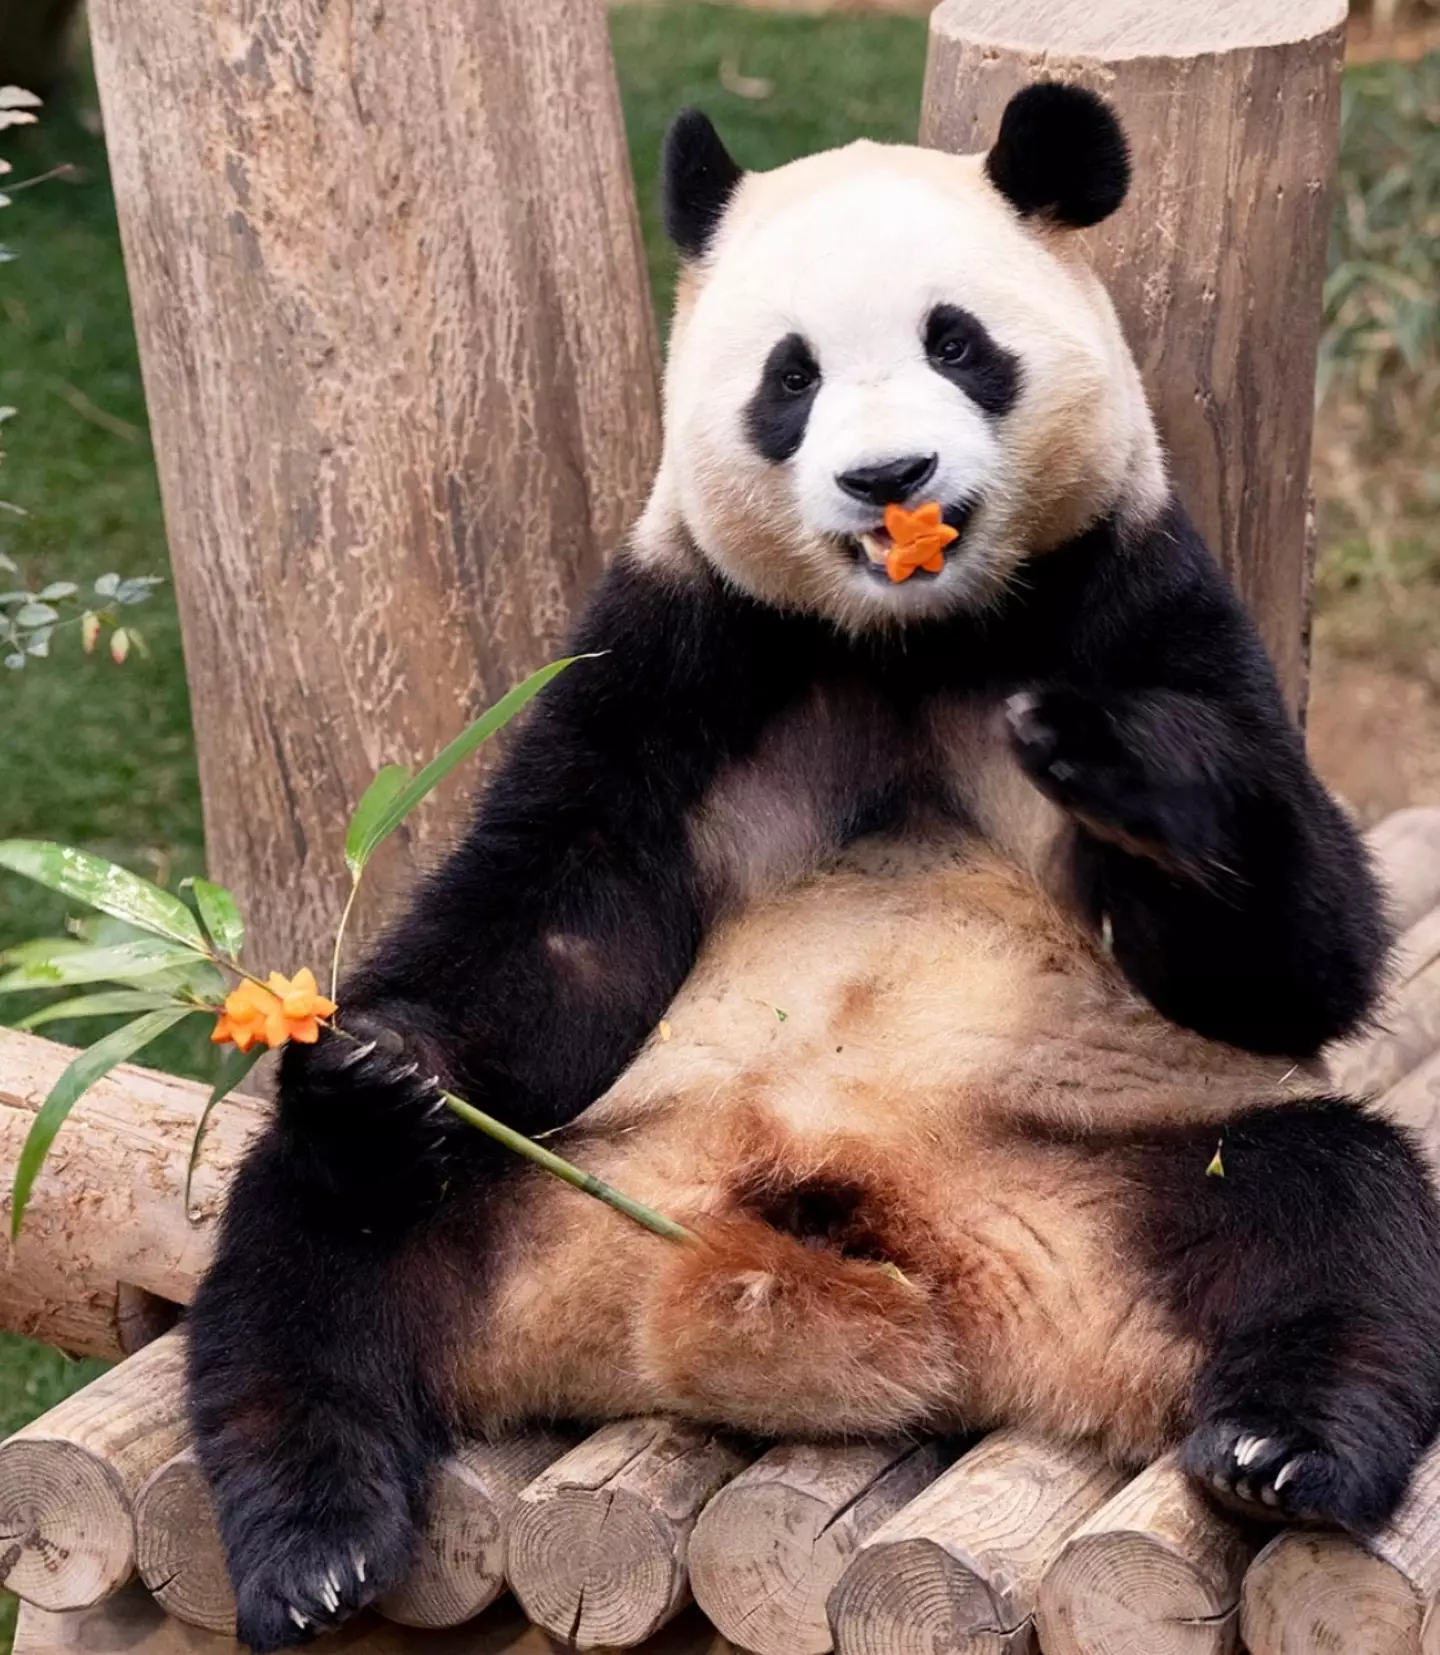 Cuidador compartilha momento final comovente com panda que ele criou desde o nascimento